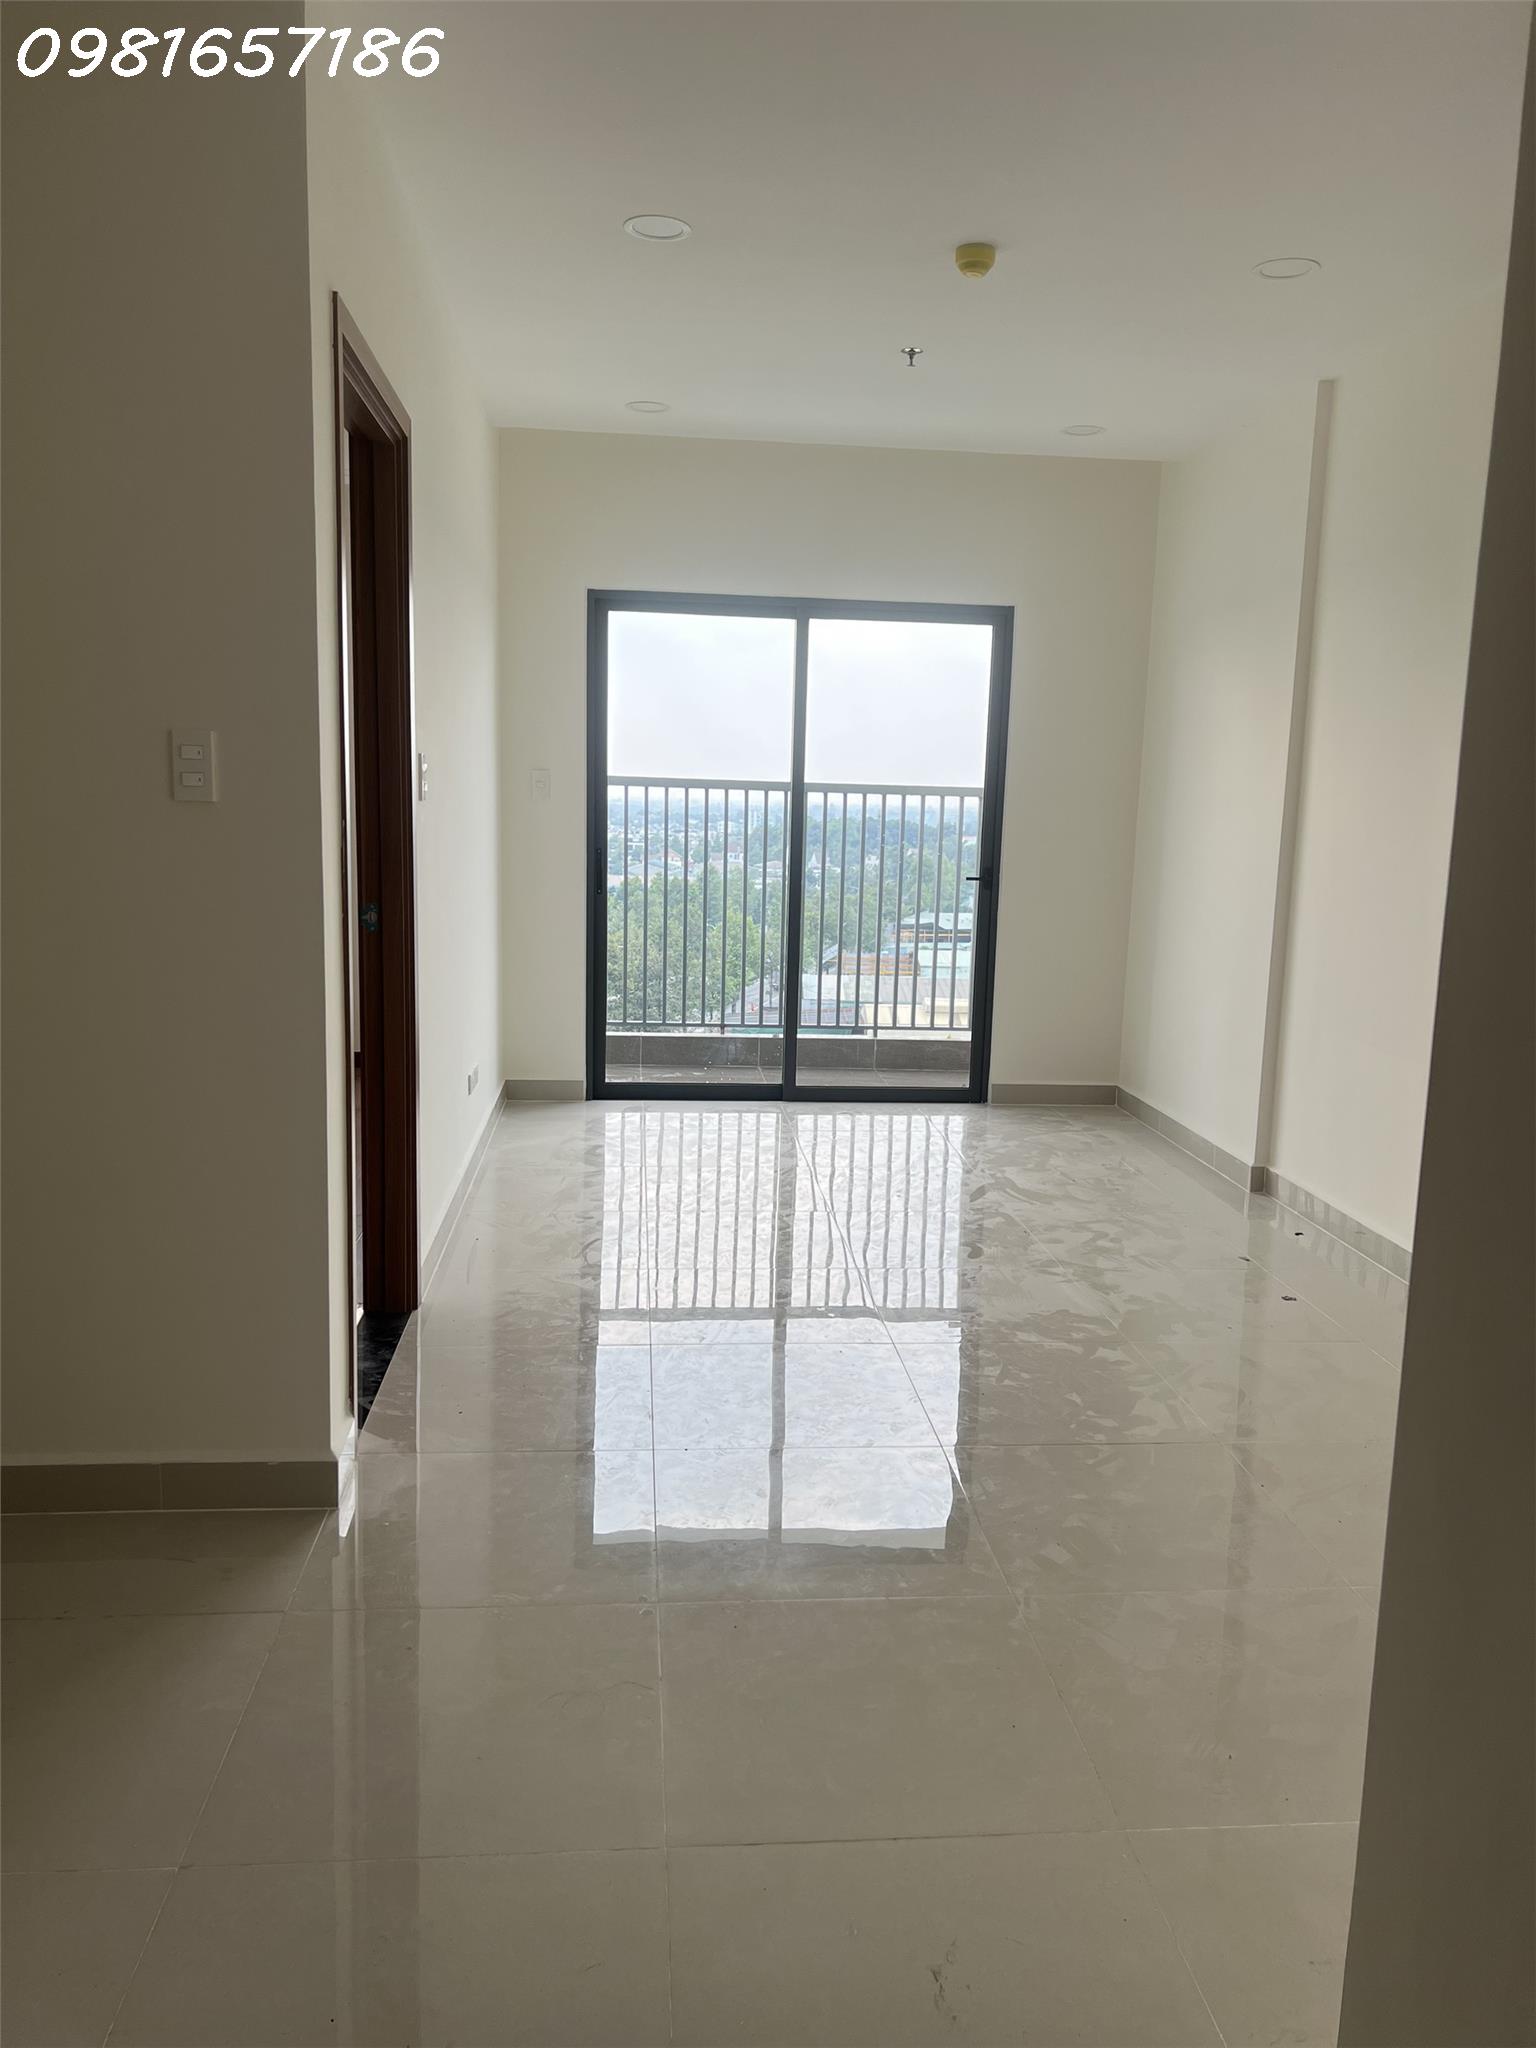 Cho thuê căn hộ dự án Minh Quốc Plaza, 2PN + 2WC - DT 65m2 - Nội thất cơ bản - Ảnh 3